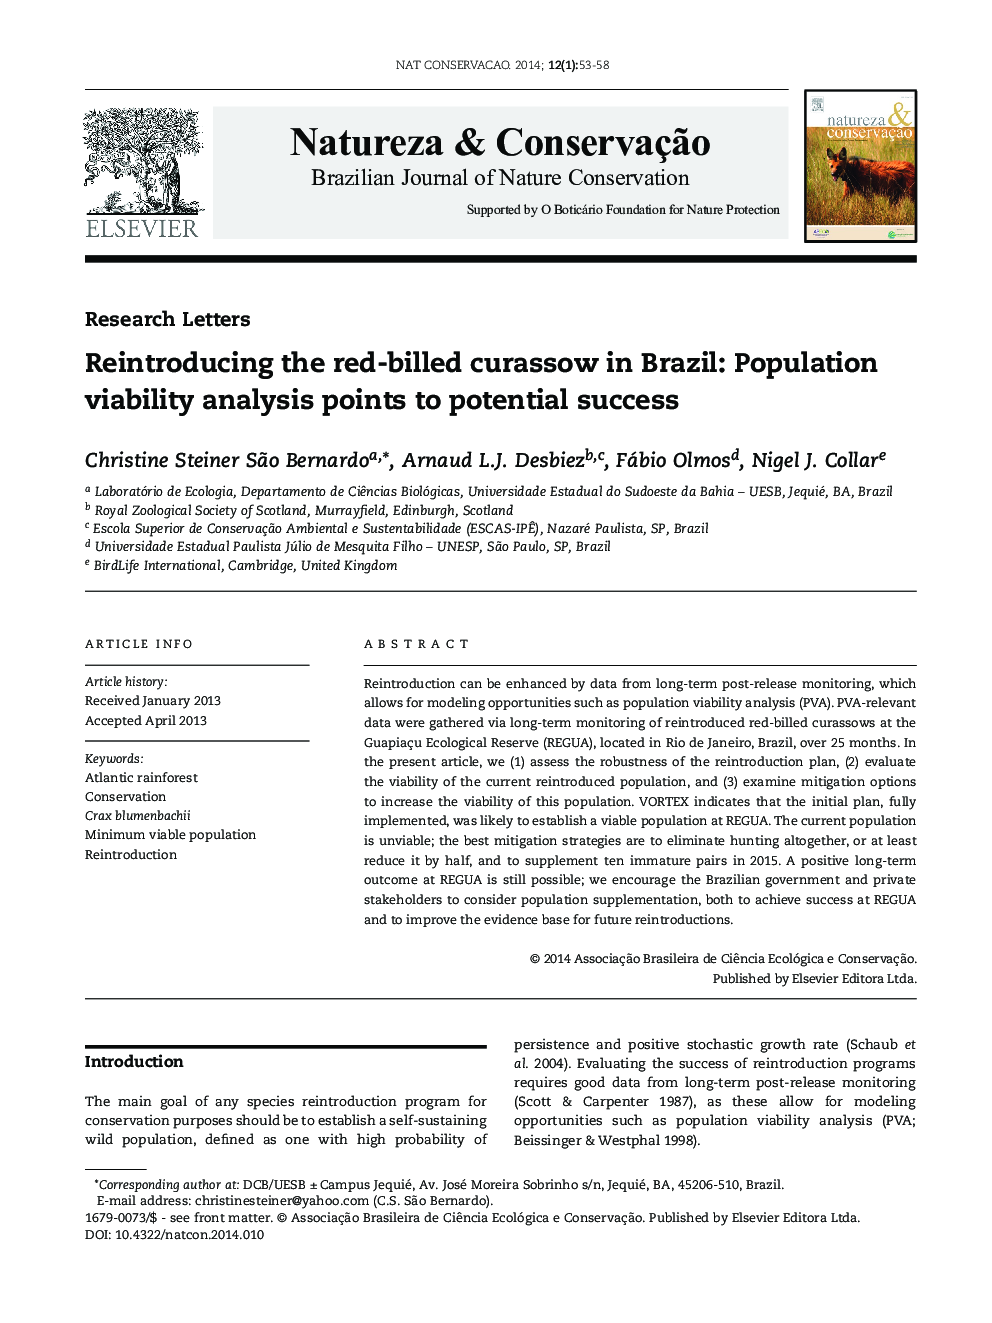 بازنگری قرمز در برزیل: تجزیه و تحلیل مساعدت جمعیت نشان دهنده موفقیت بالقوه است 